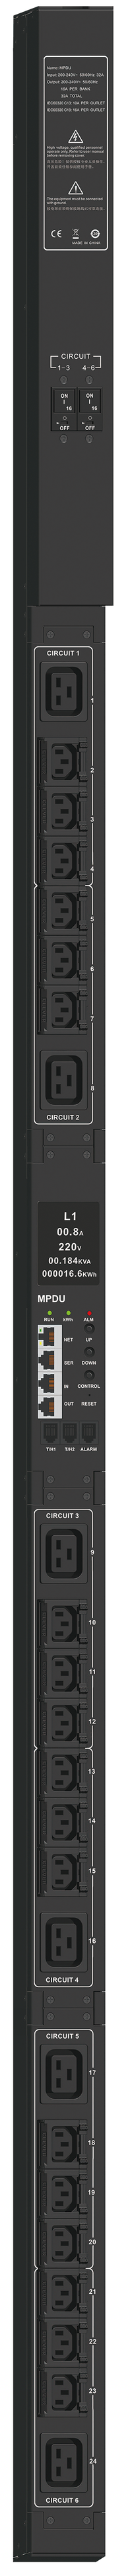 ITK ADMIN PDU с общим мониторингом PV1412 1Ф 32А 21С13 3С19 кабель 3м IEC60309